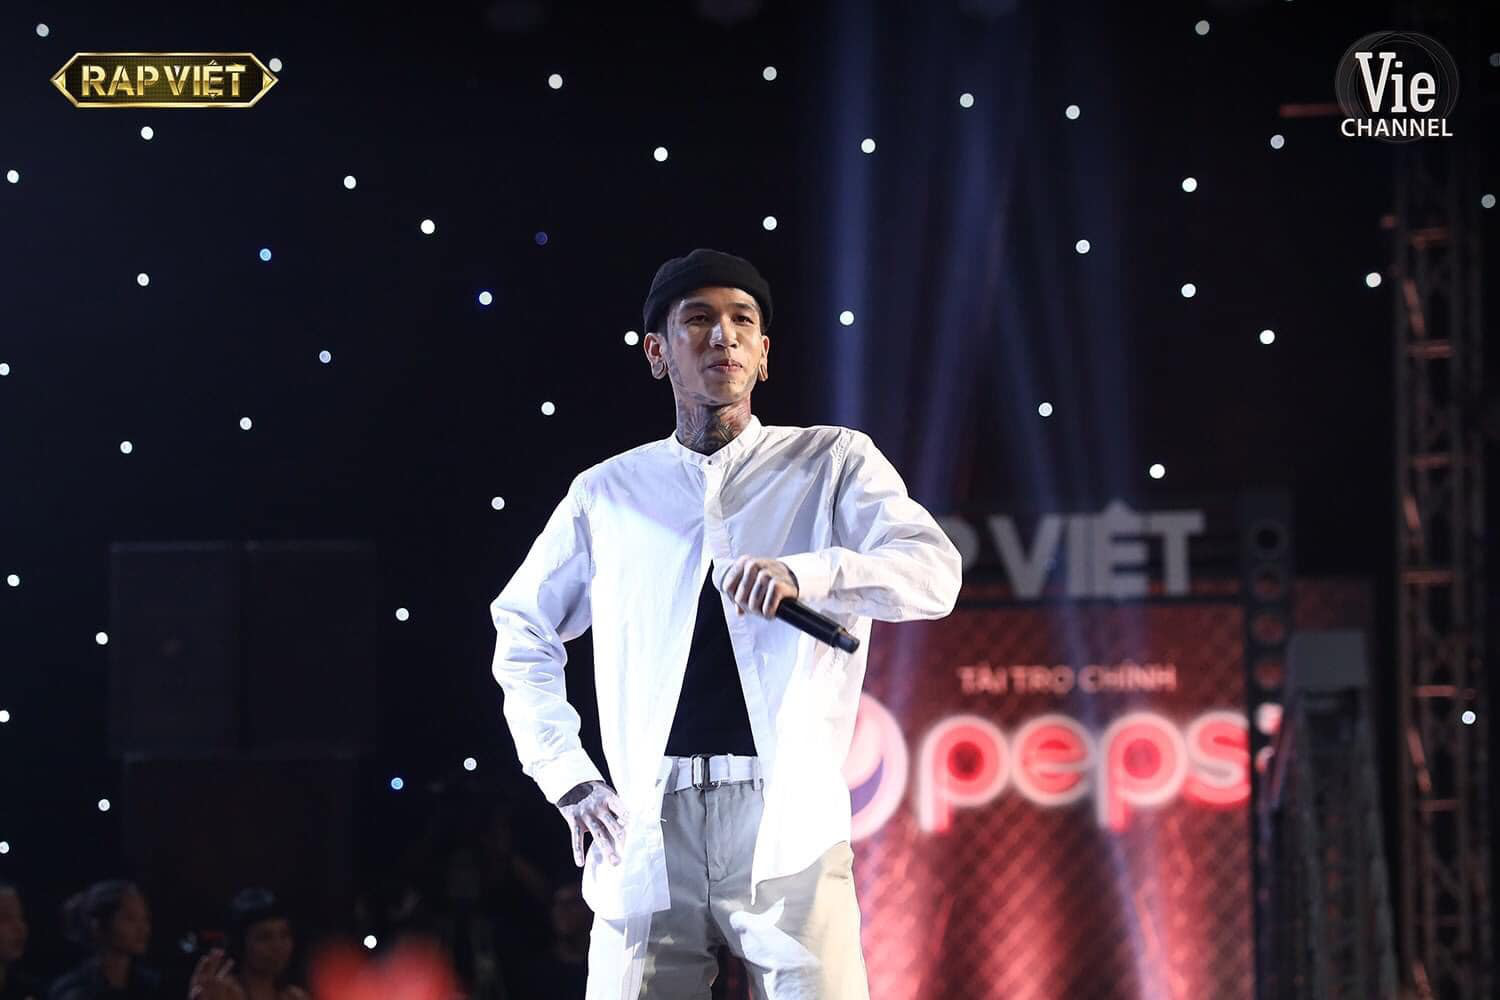 Nóng, tiết lộ giải thưởng lớn chưa từng được công bố ở Rap Việt - Ảnh 7.